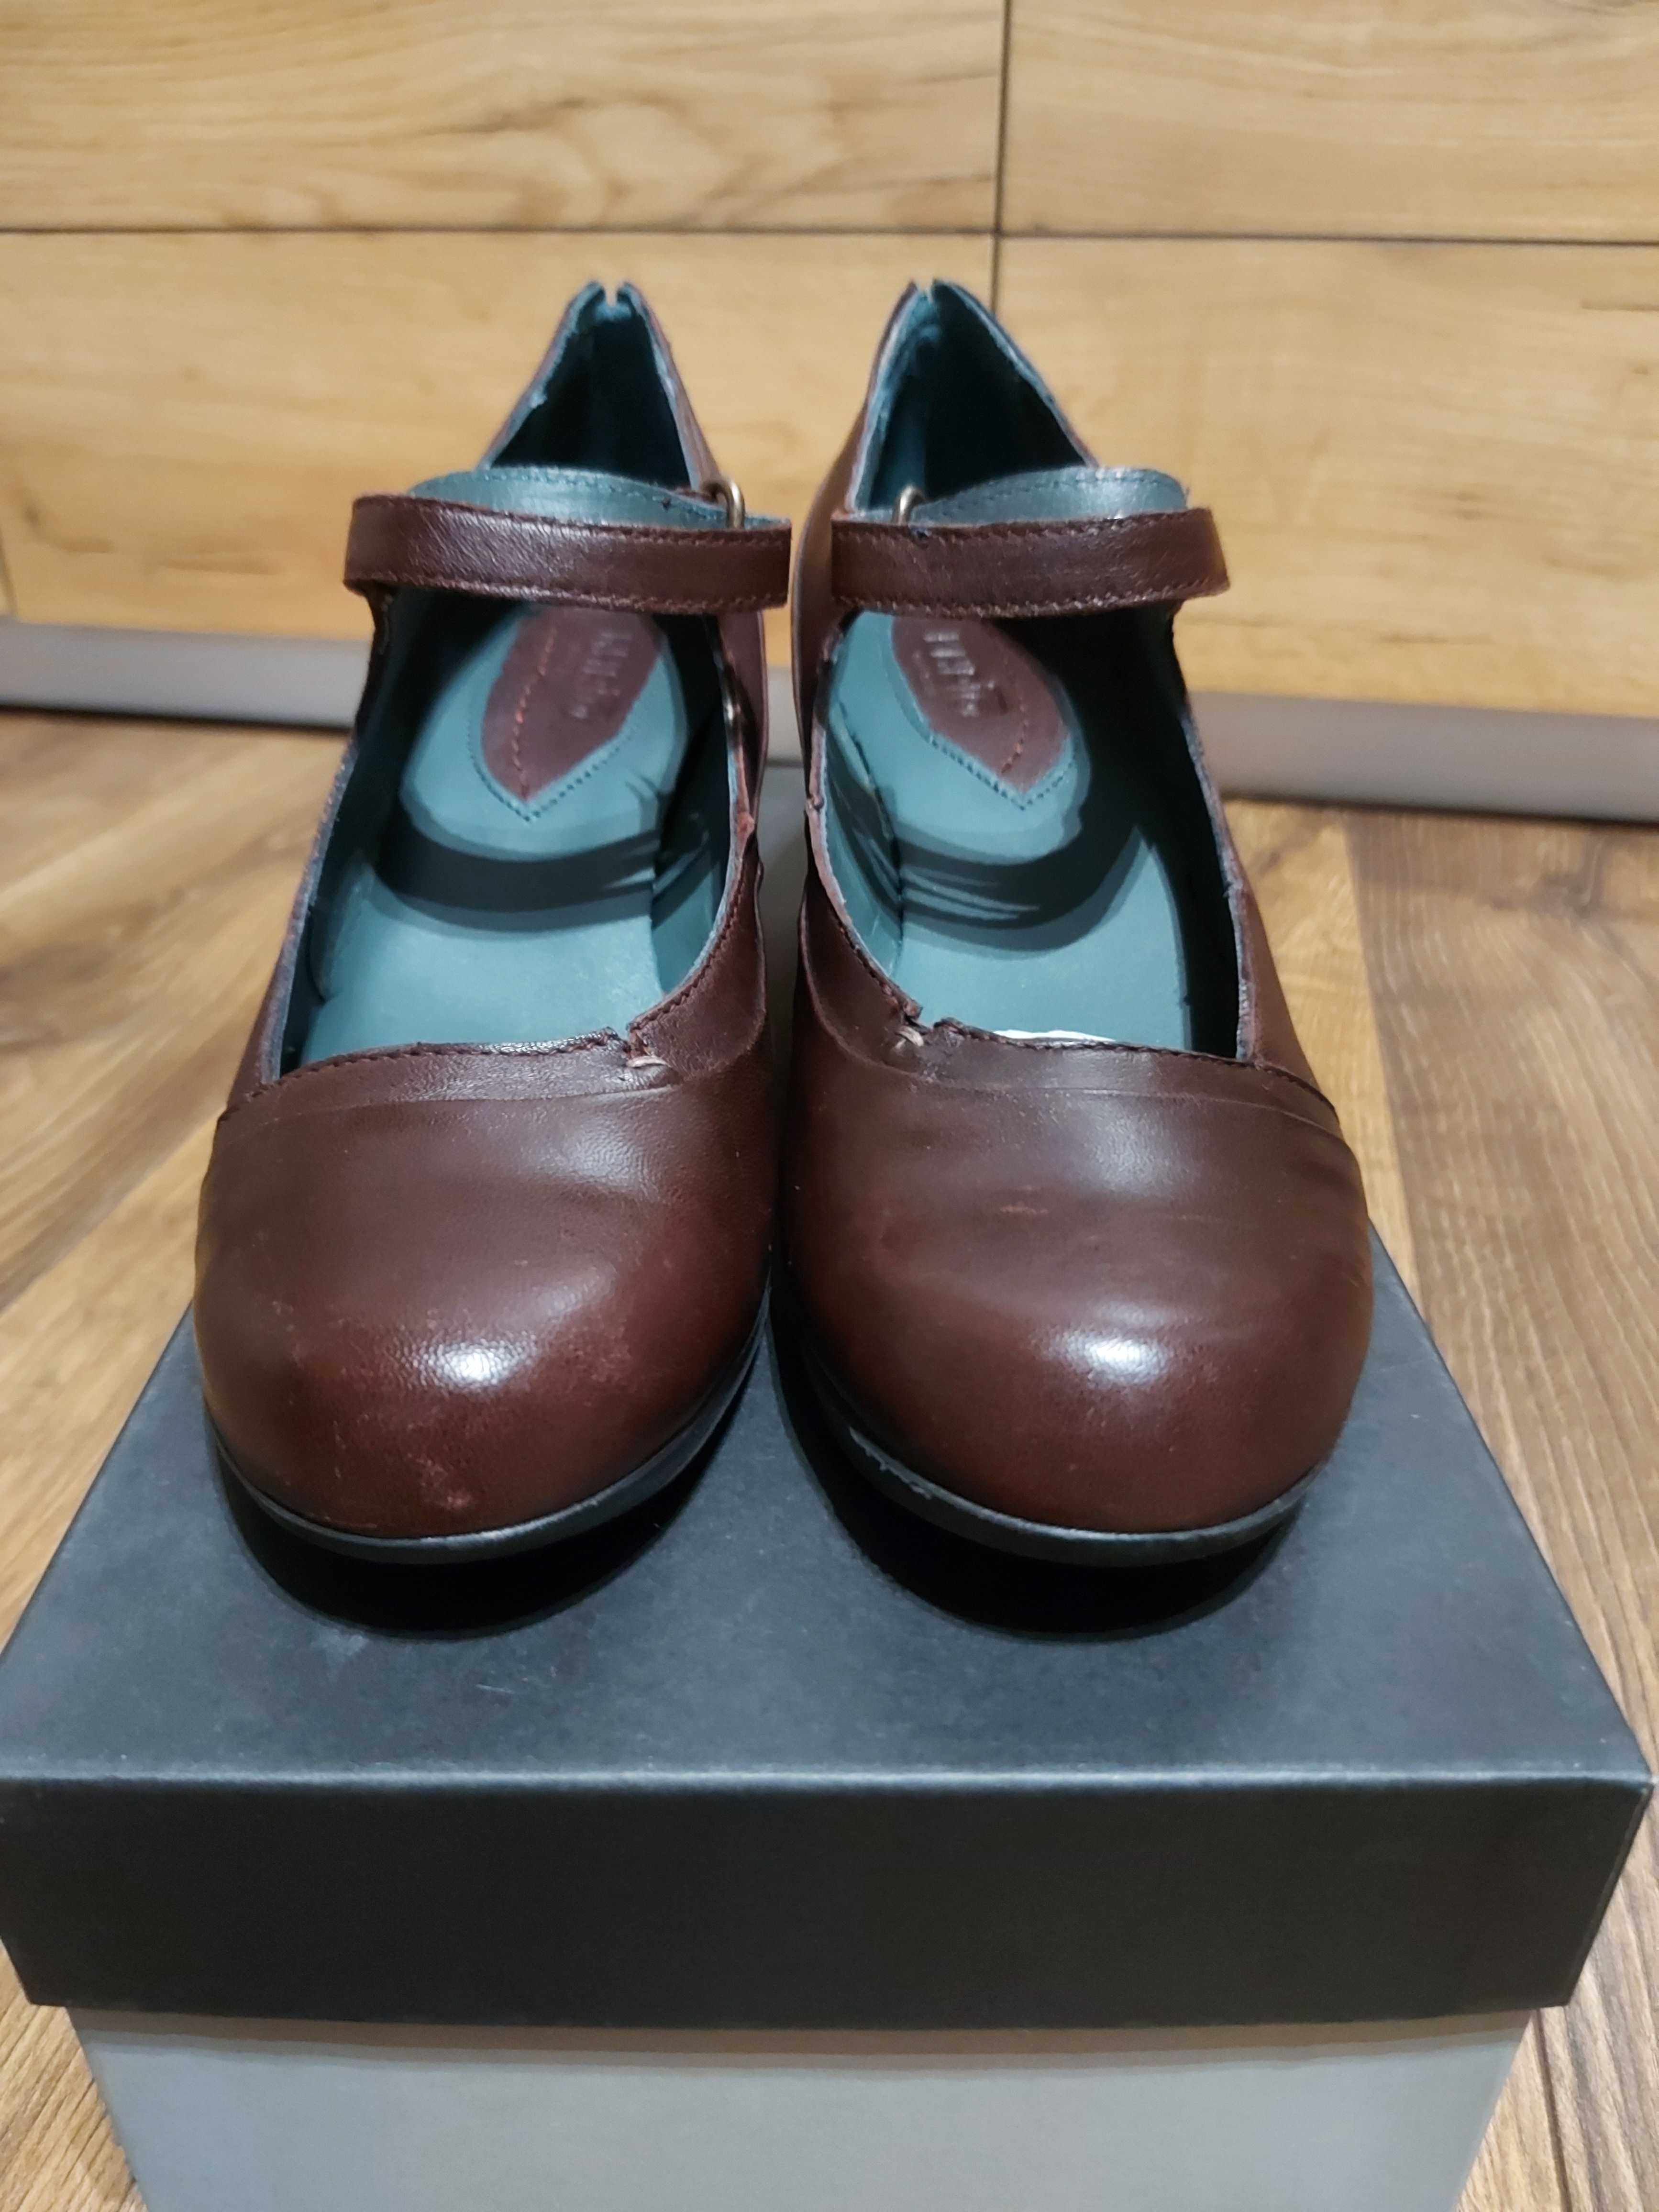 Pantofi KHRIO dama NOI, piele naturala ,nr.39 ,bordo